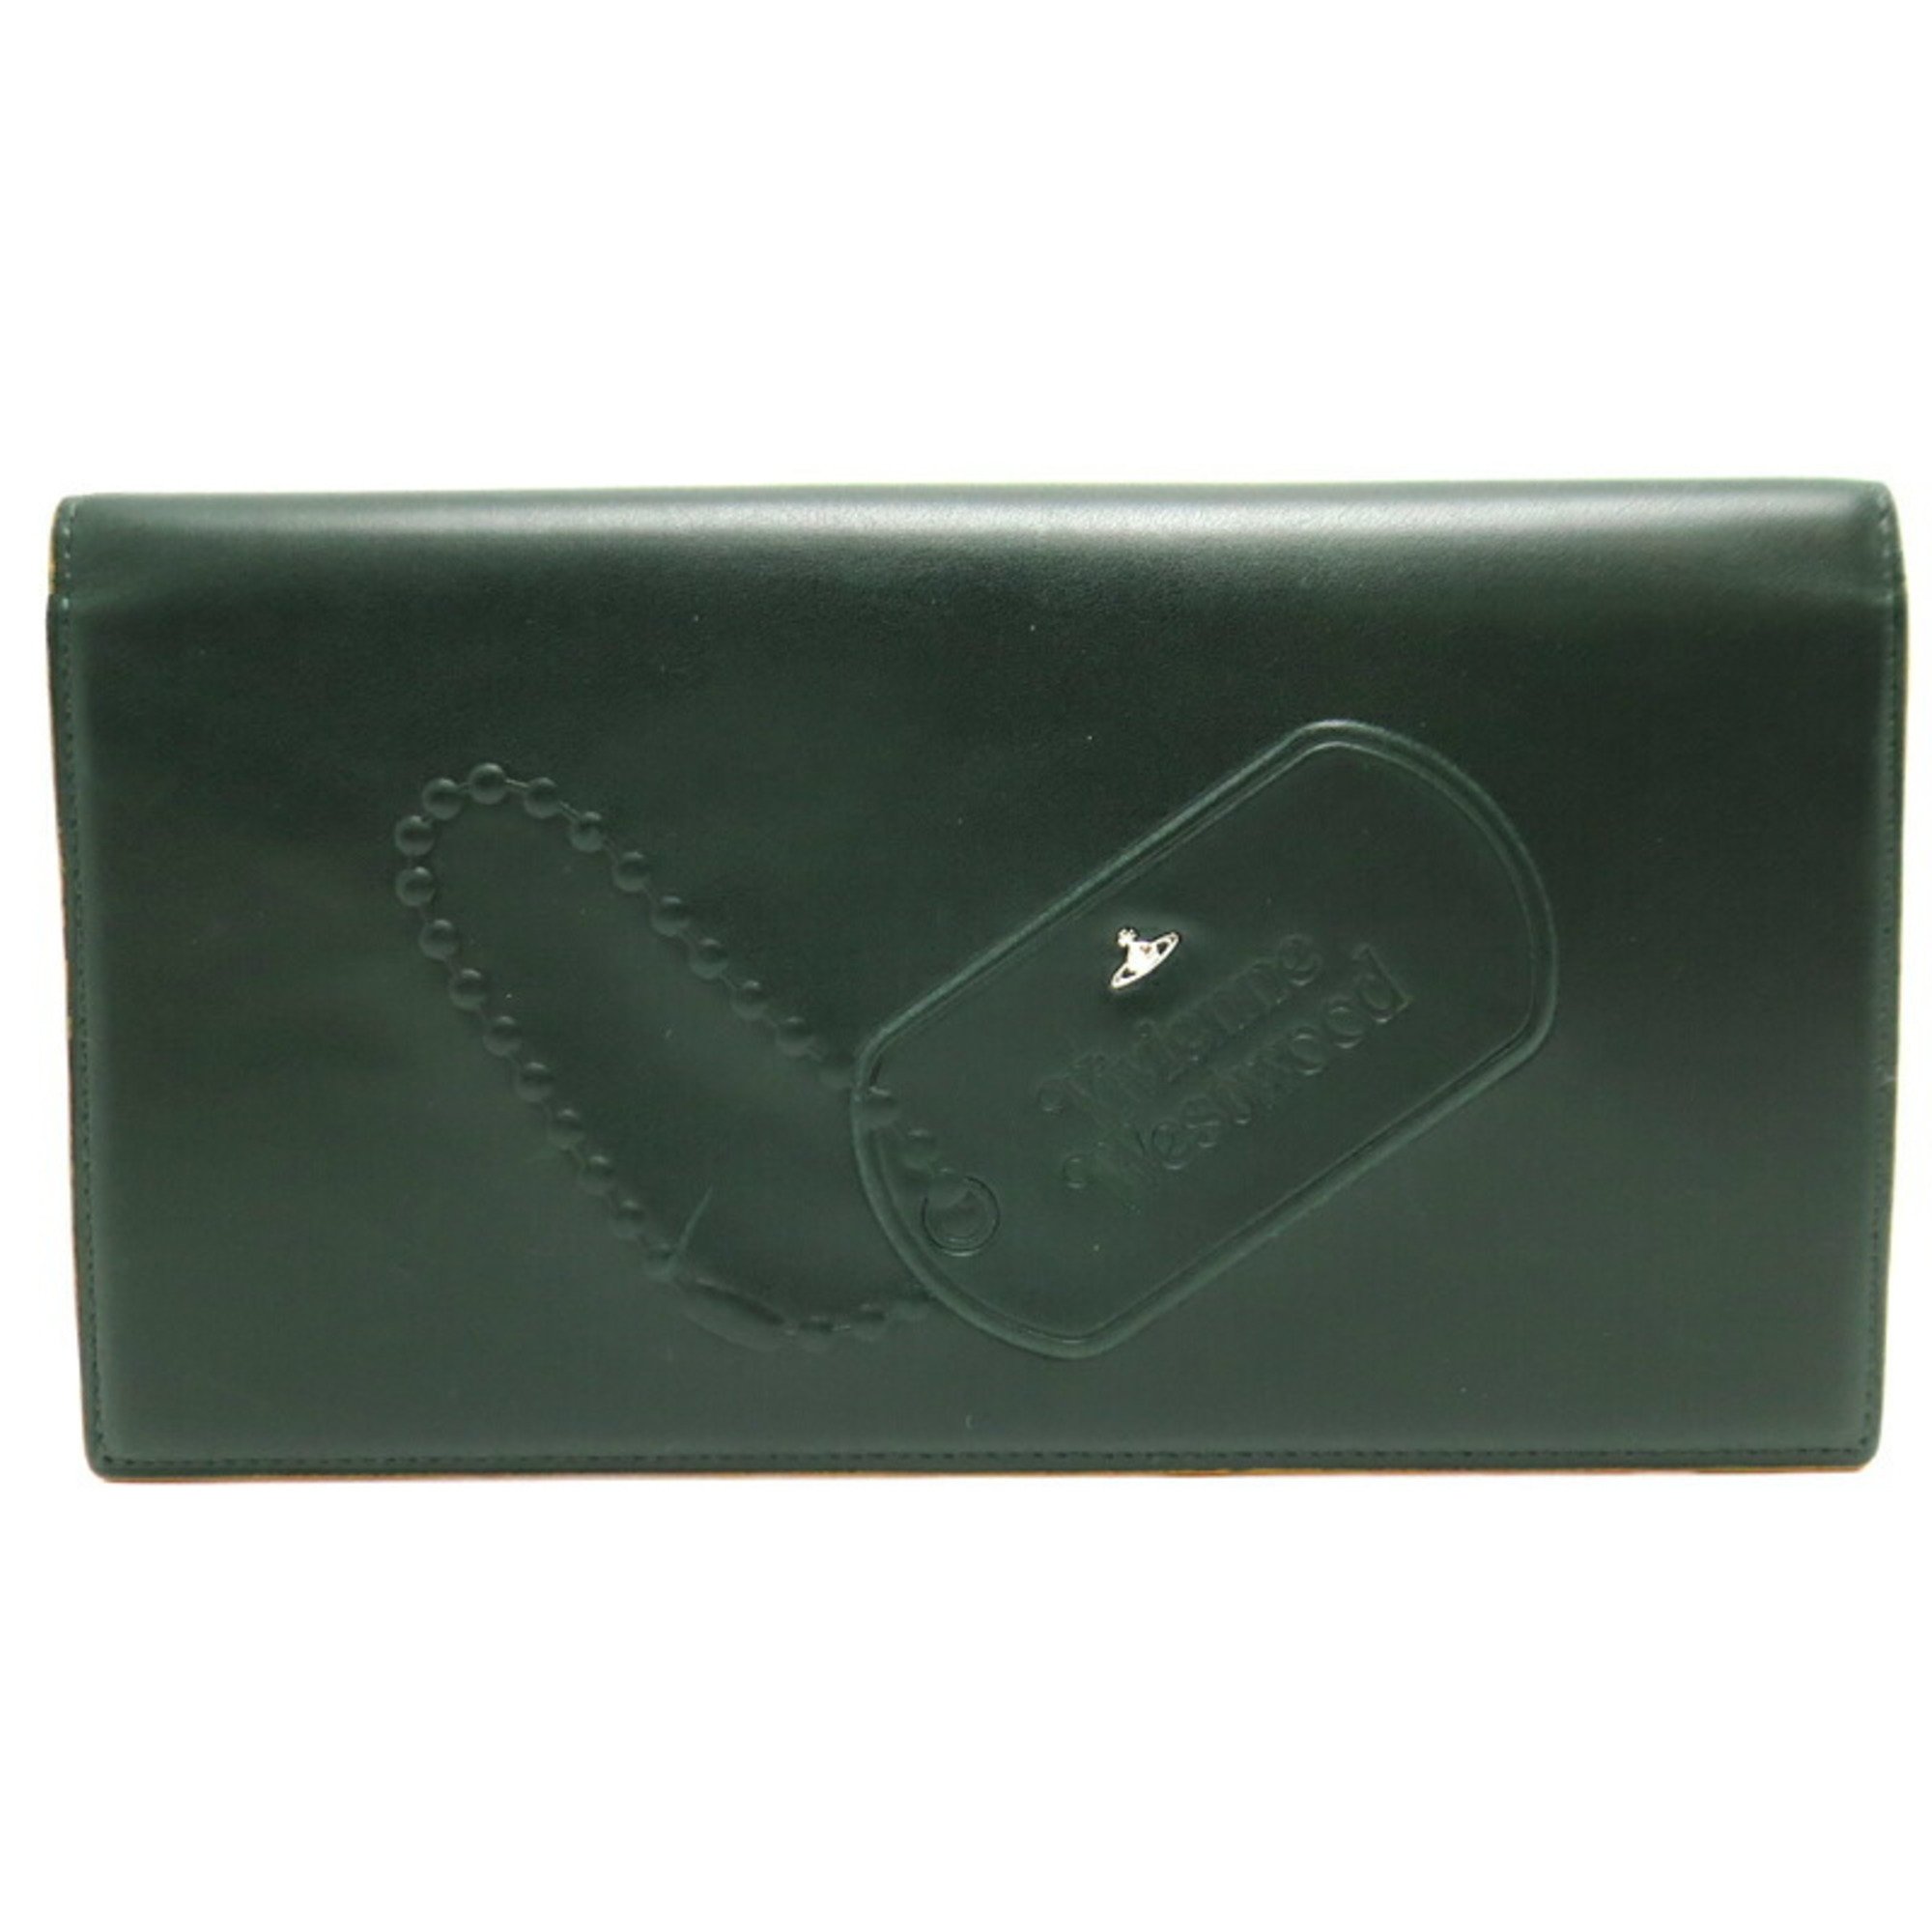 Vivienne Westwood Dog Tag Women's/Men's Pass Case Leather Dark Green (Dark Green)